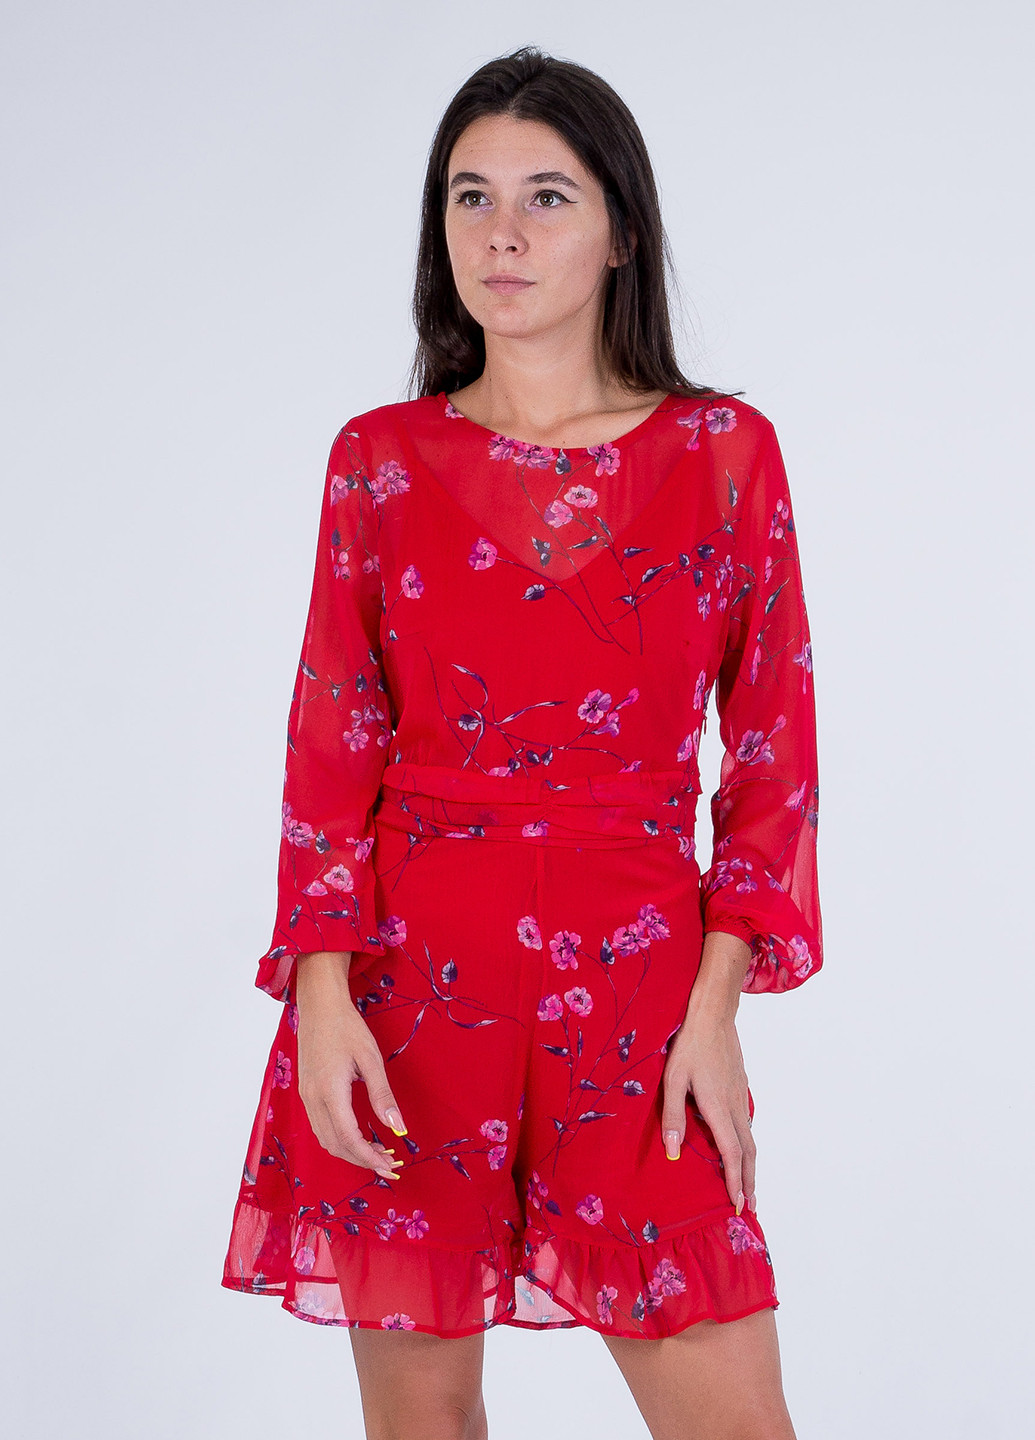 Комбинезон Sarah Chole комбинезон-шорты цветочный красный кэжуал полиэстер, шифон